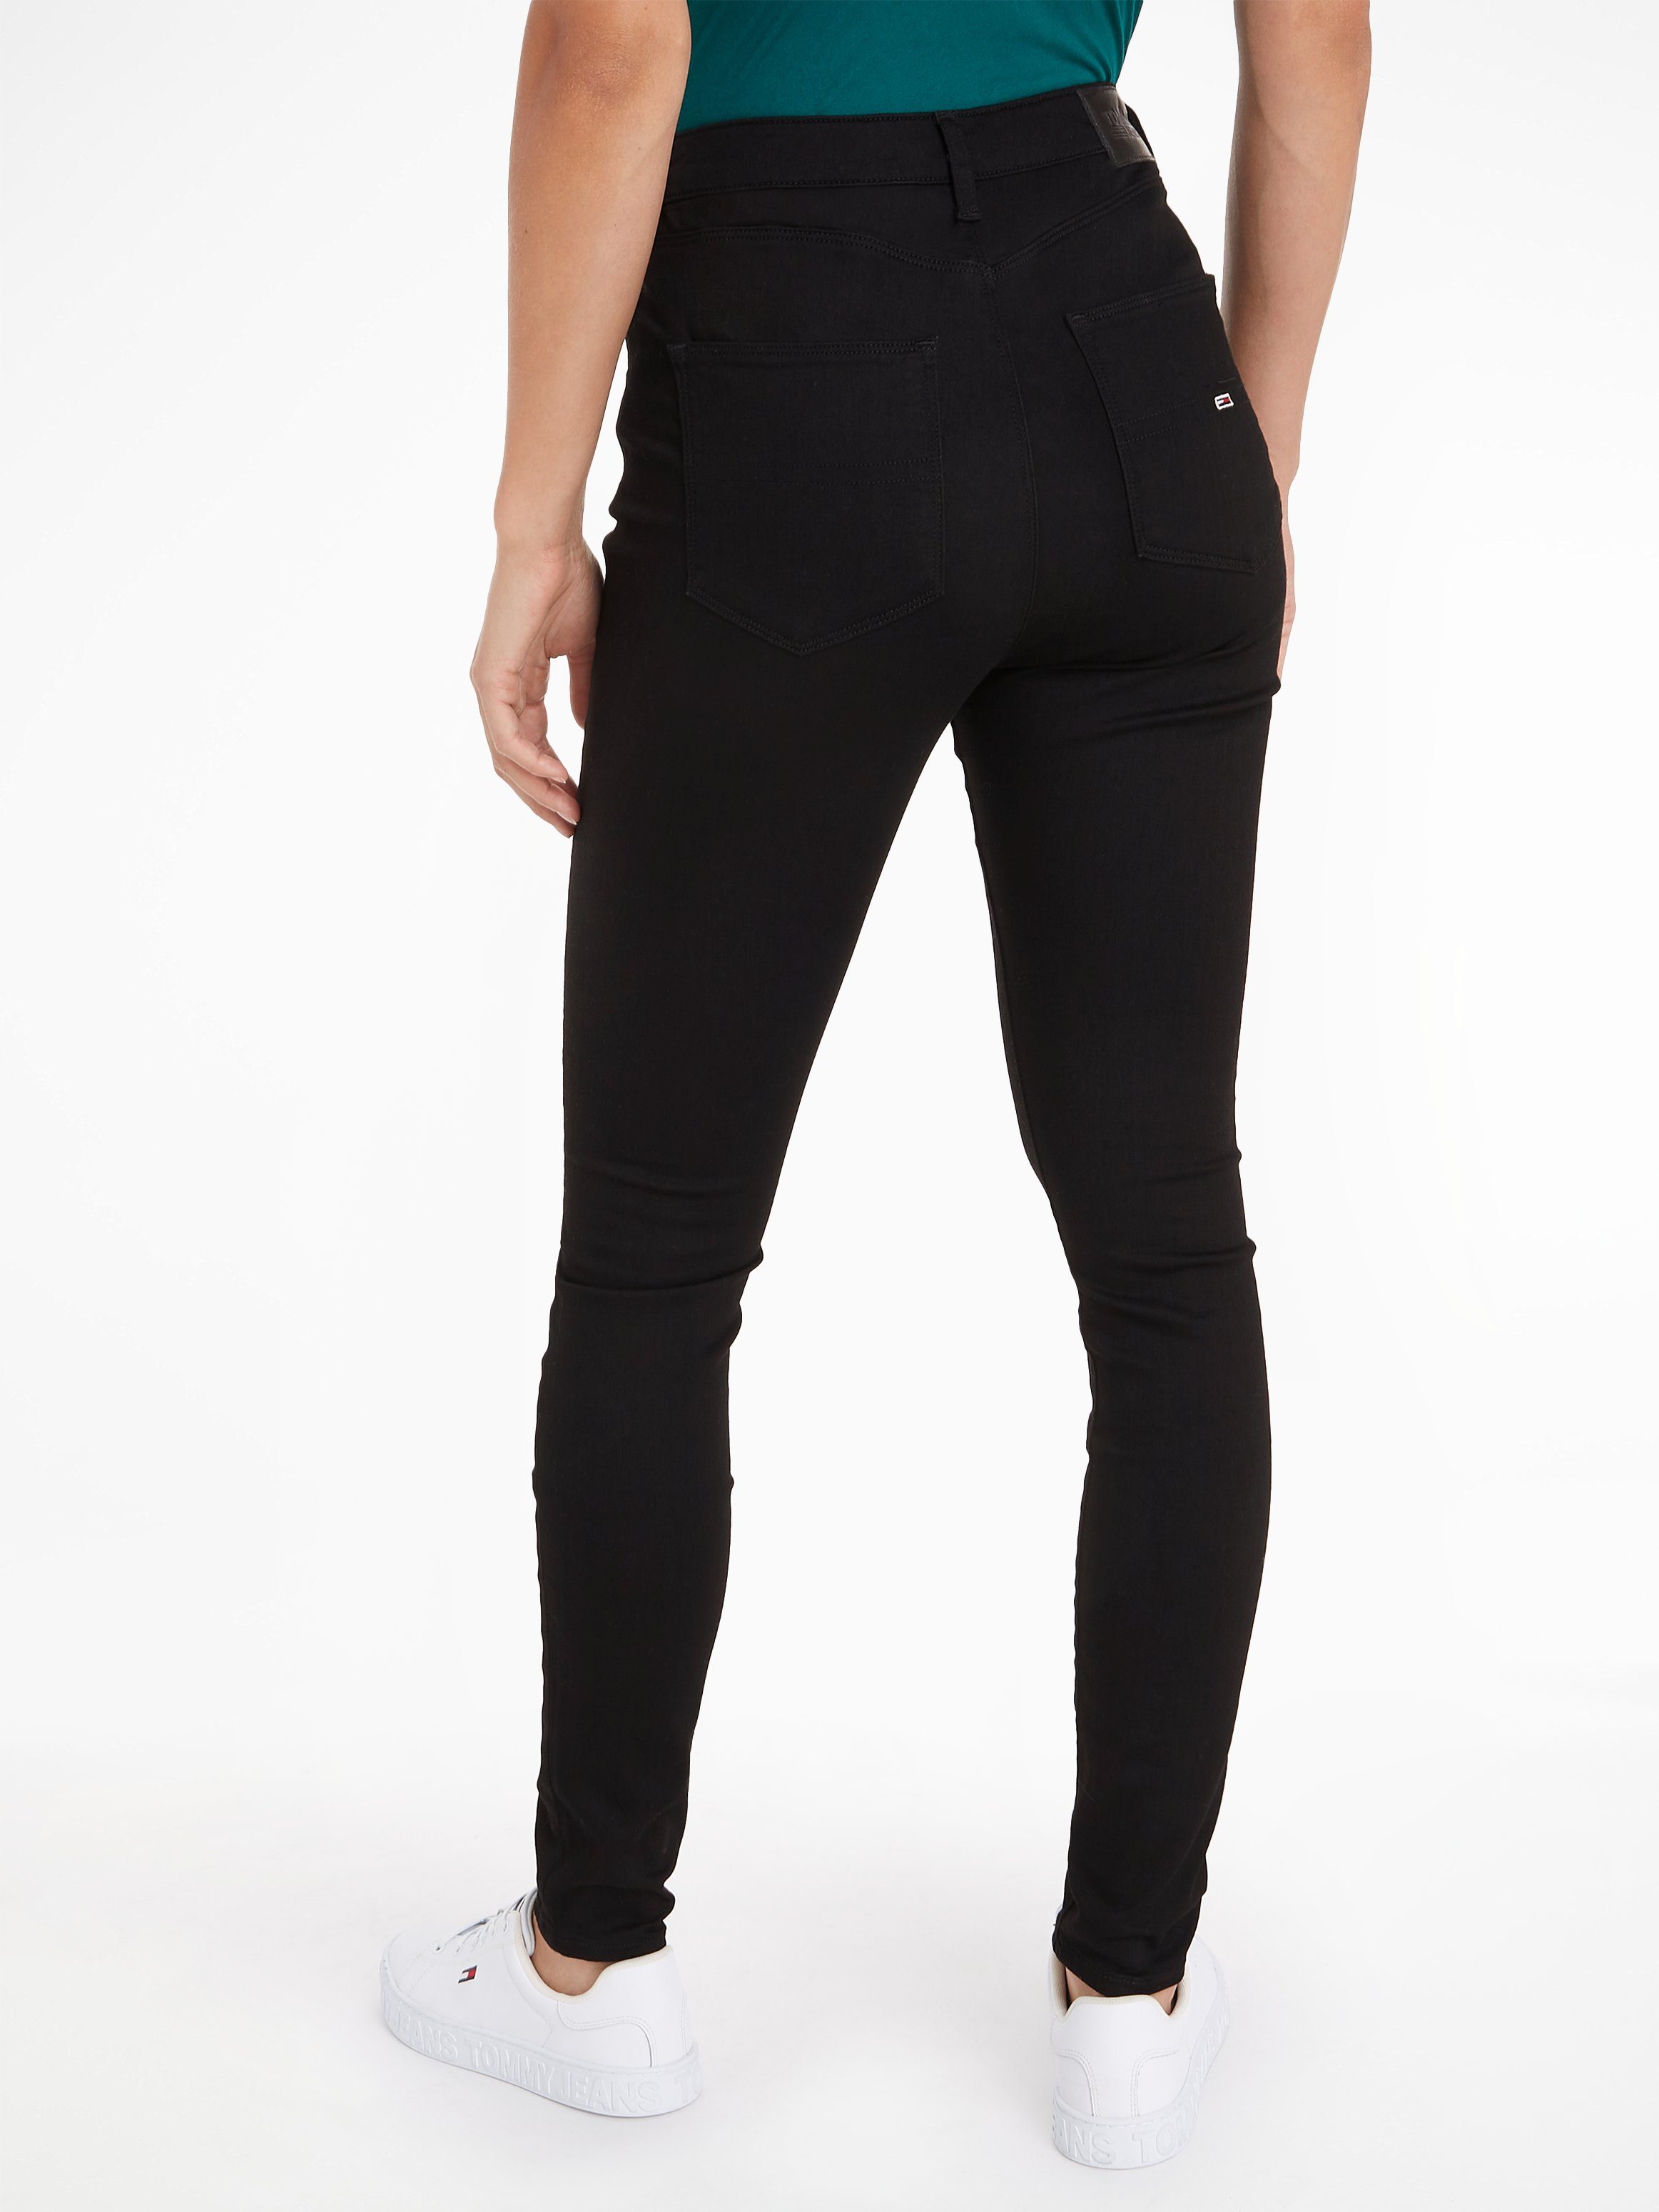 SYLVIA Jeans Skinny-fit-Jeans einen Materialien SKNY Black Tommy Sitz. für SUPER und HR Hochwertige perfekten Staten bequemen